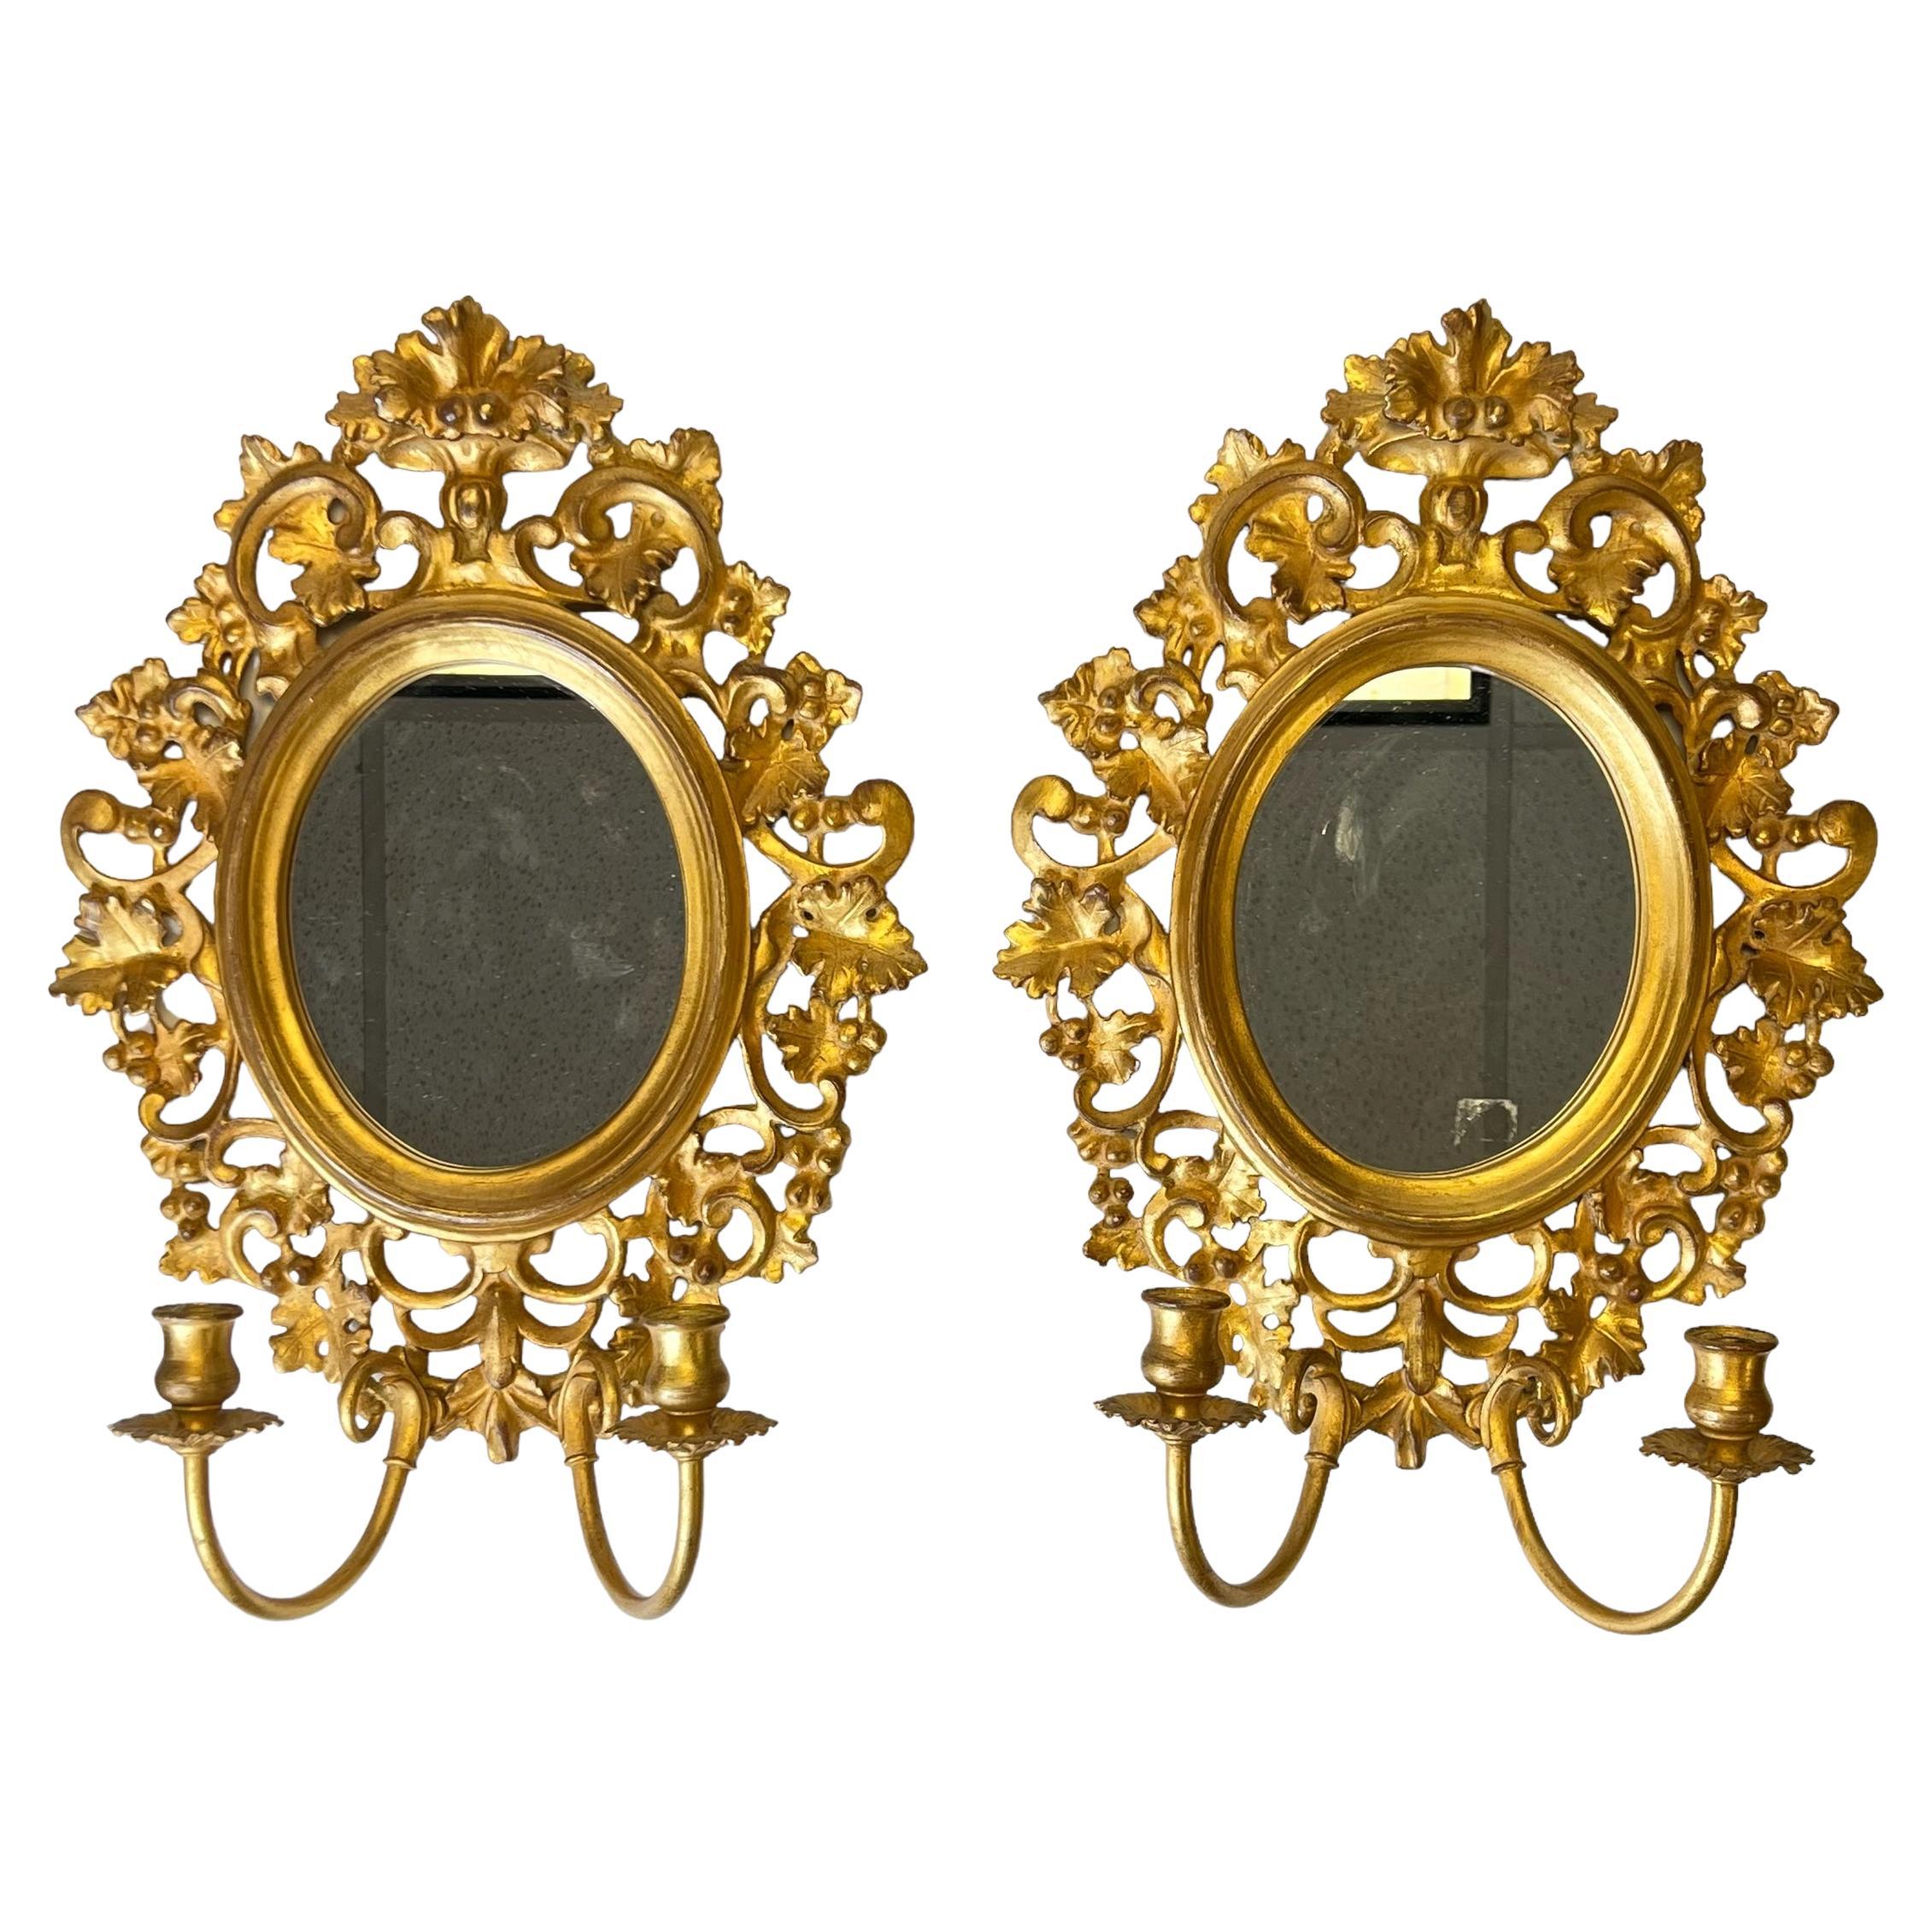 Paire d'appliques Girandole italiennes néoclassiques vintage en bois doré et métal doré avec miroir